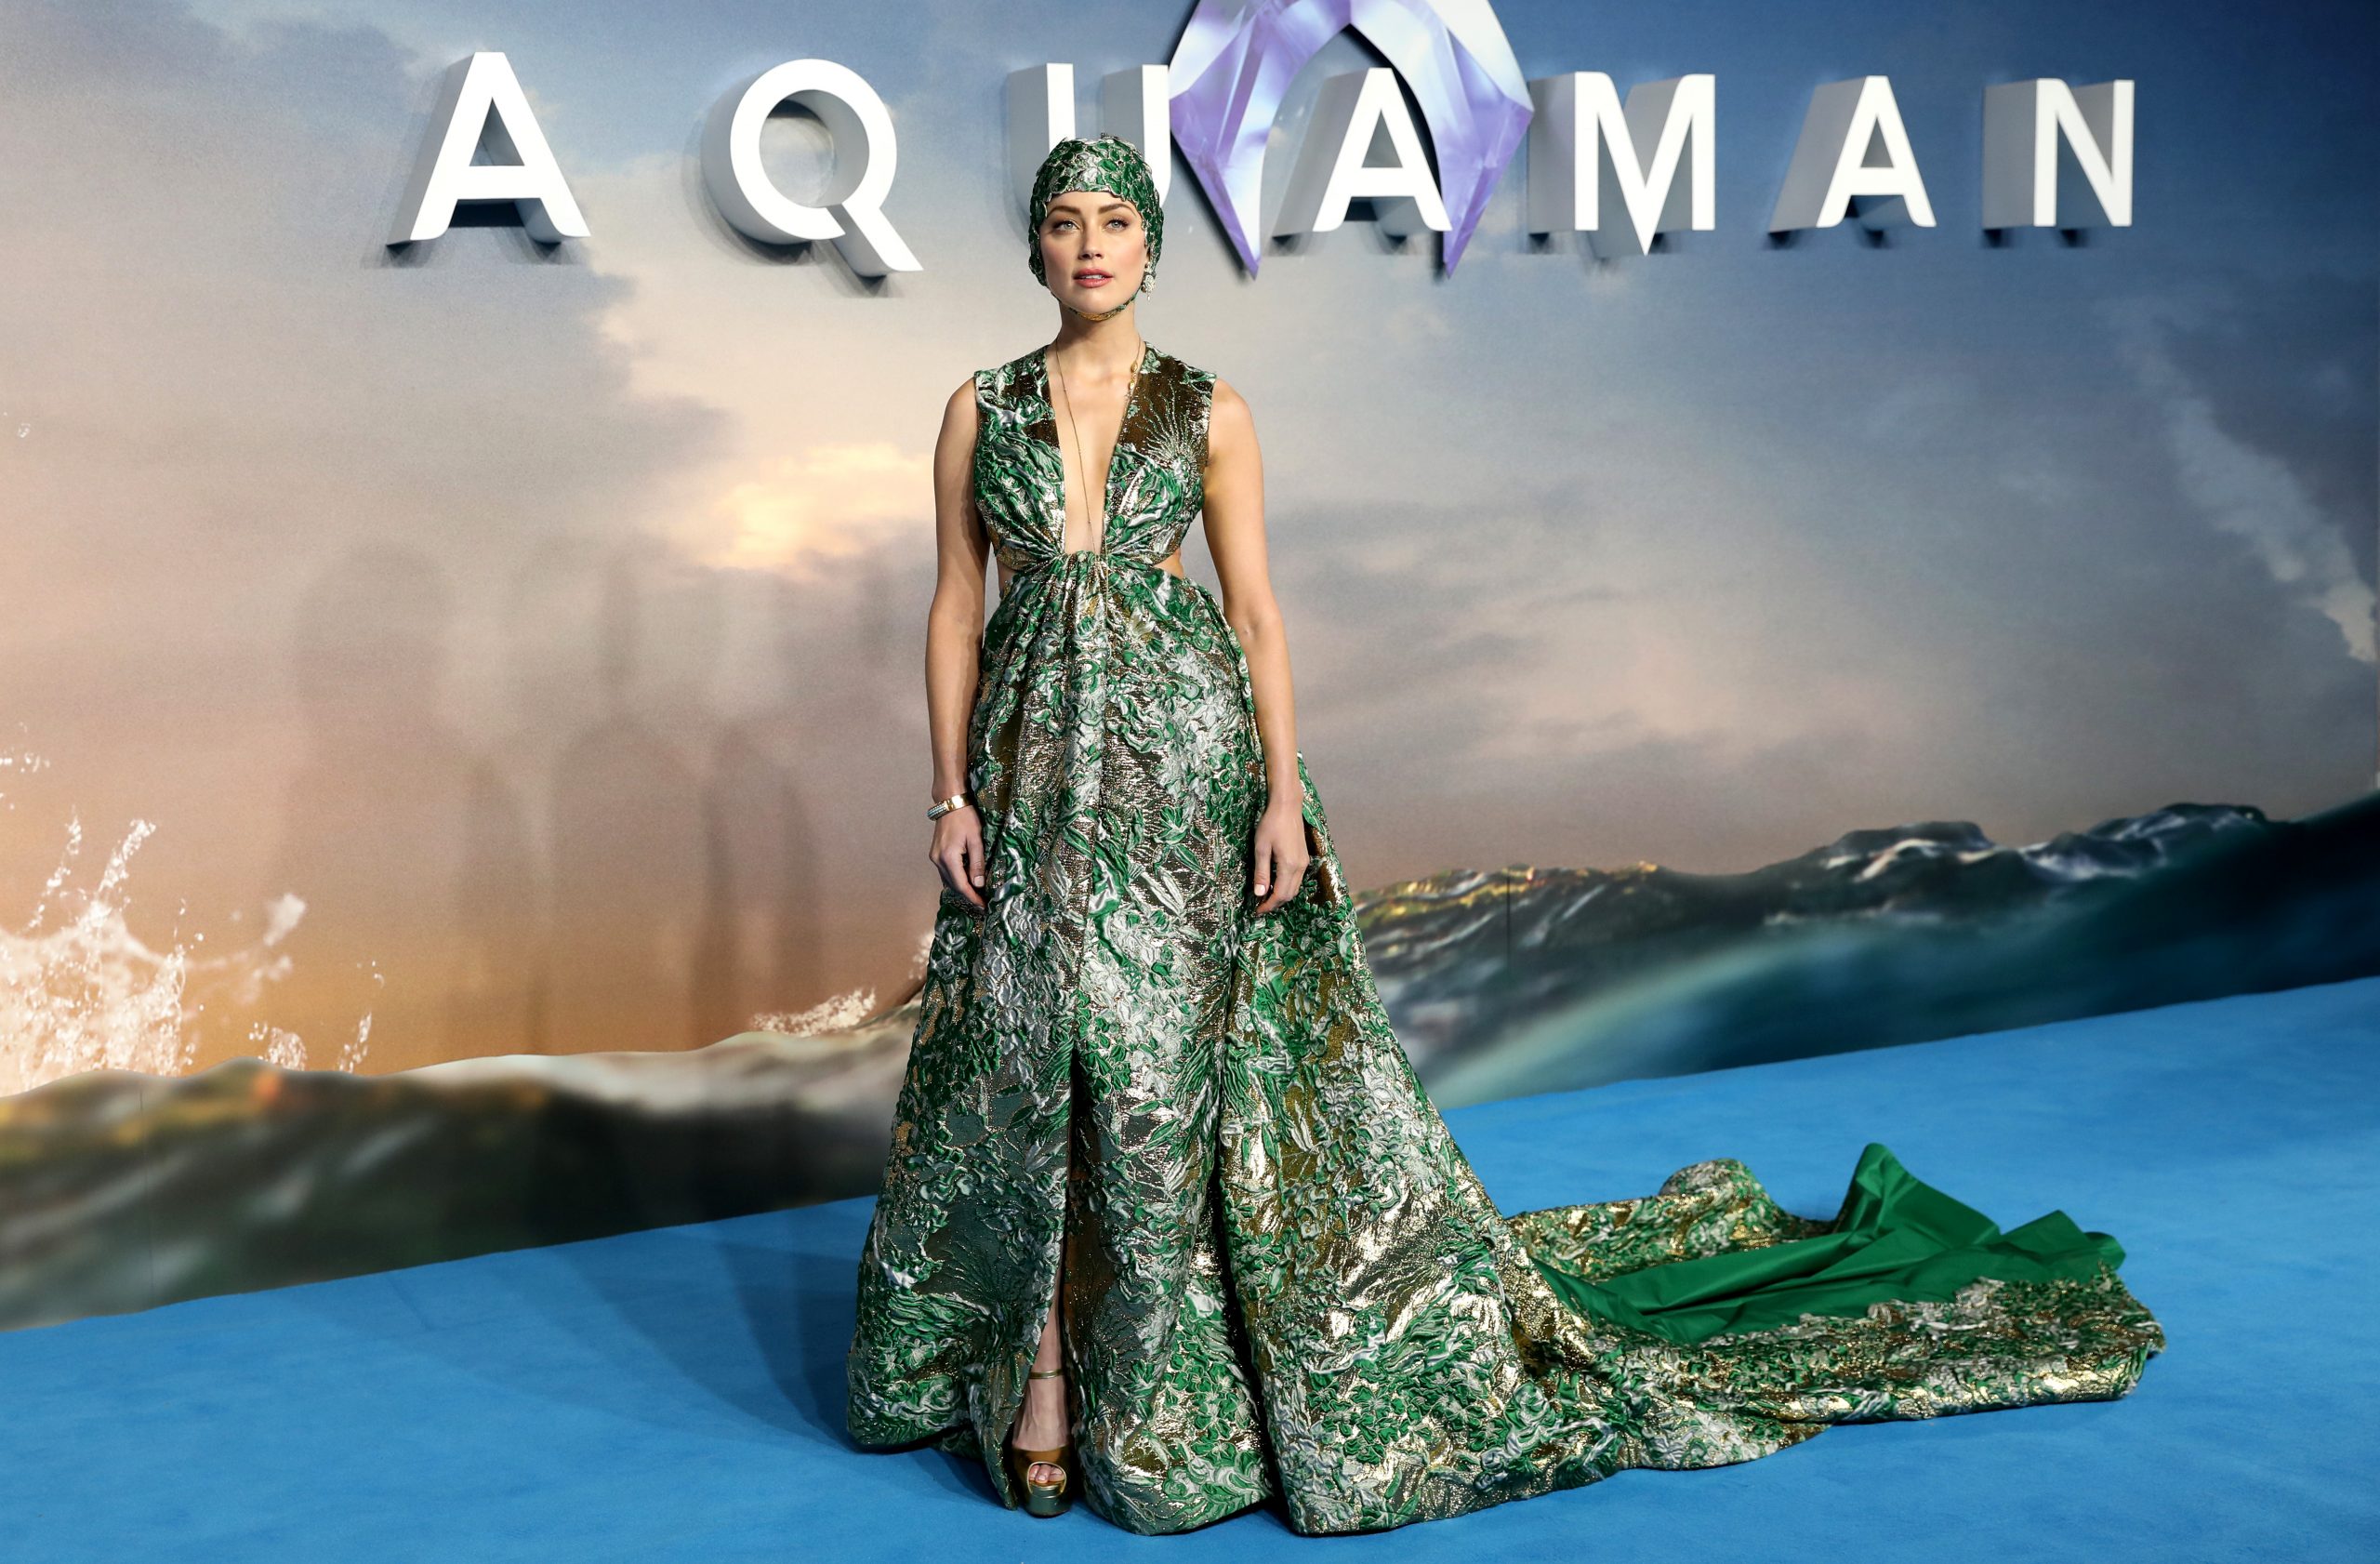 Amber Heard promocionando "Aquaman" en noviembre de 2018.